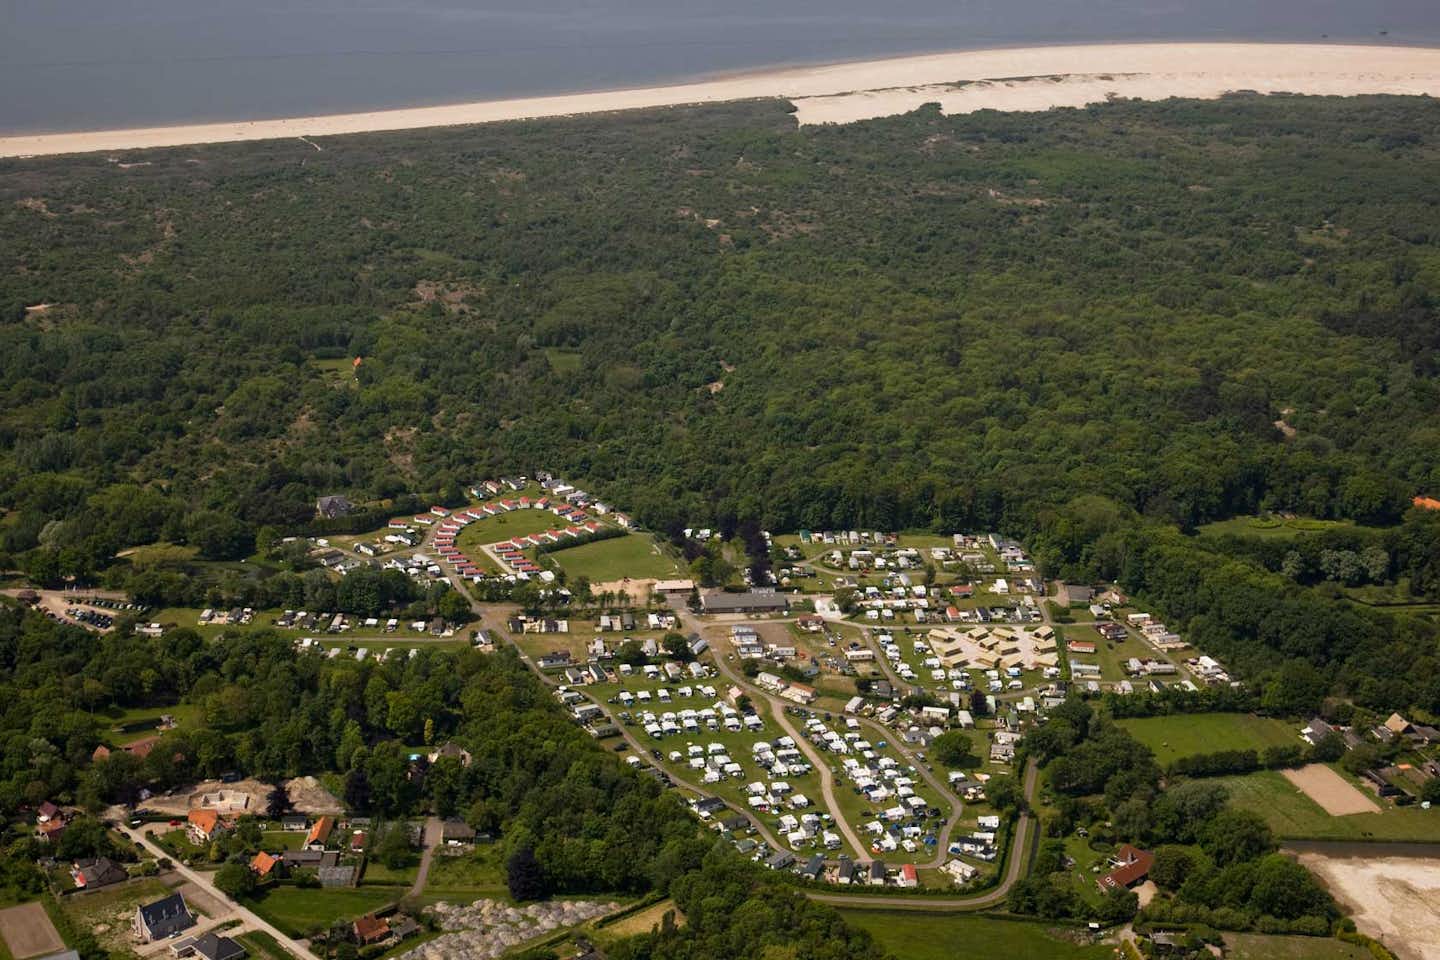 Molecaten Park Waterbos  -  Campingplatz in der Nähe vom Strand an der Nordsee aus der Vogelperspektive